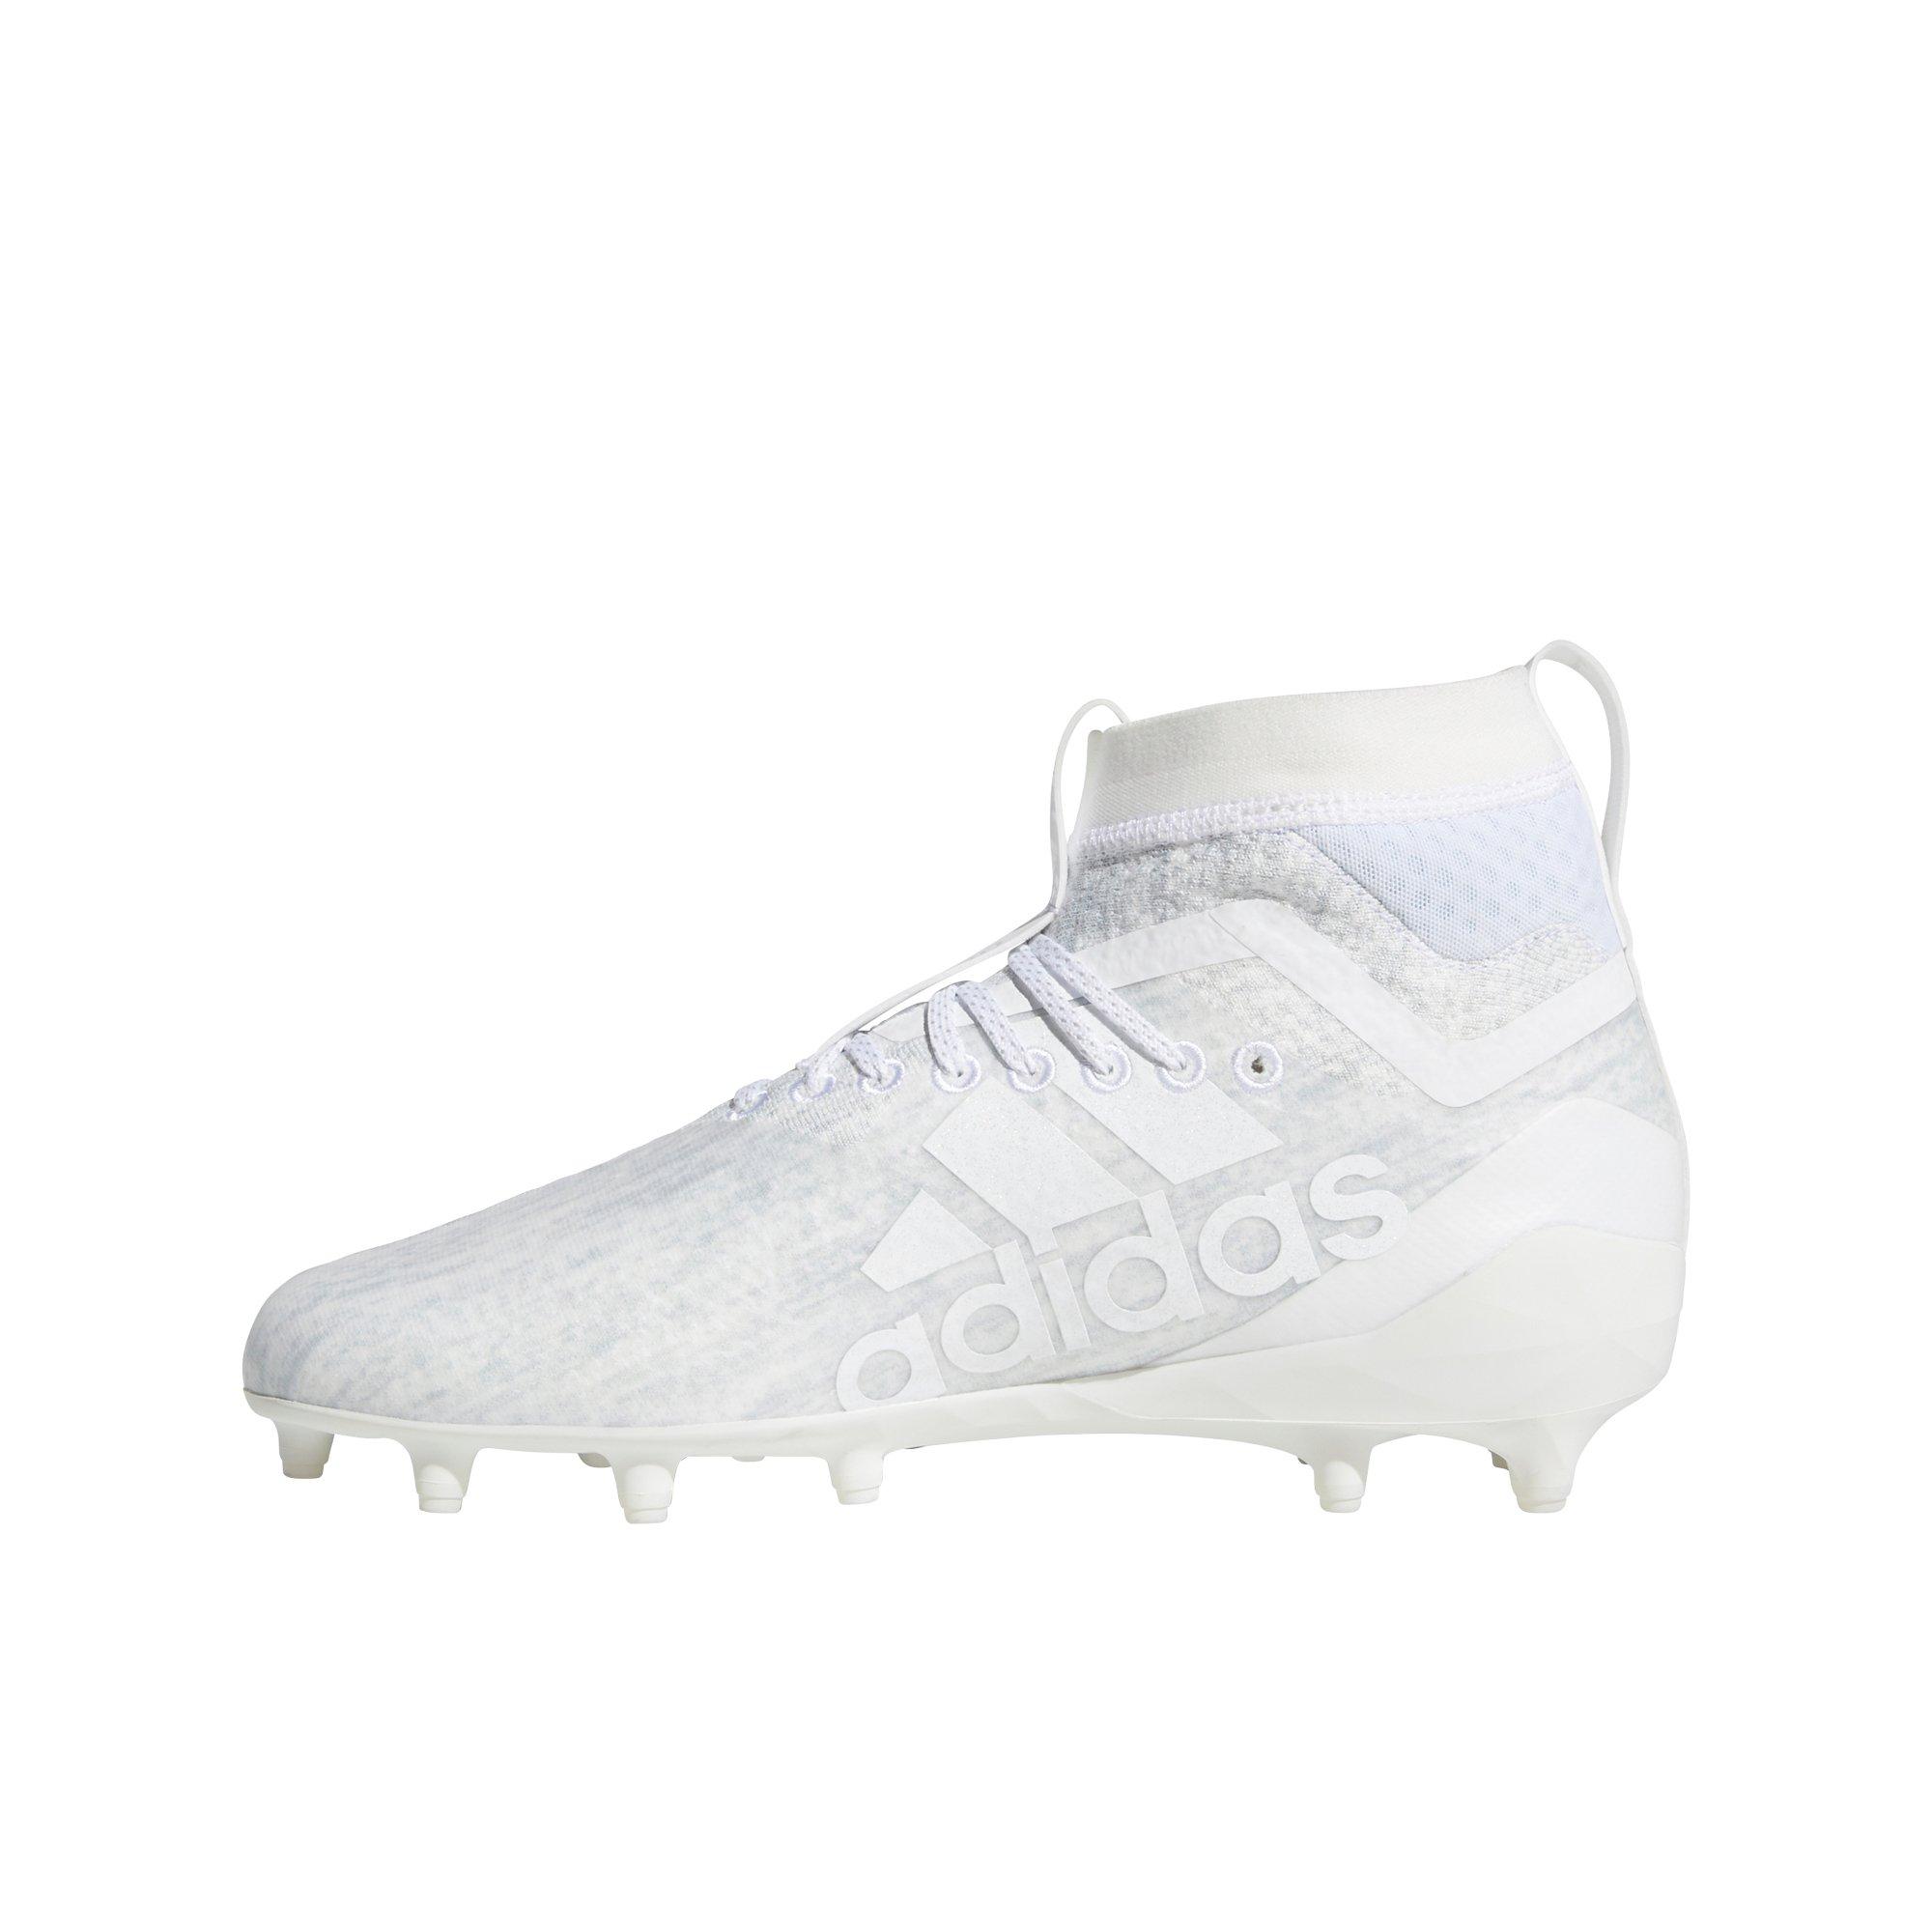 adidas football sock boots